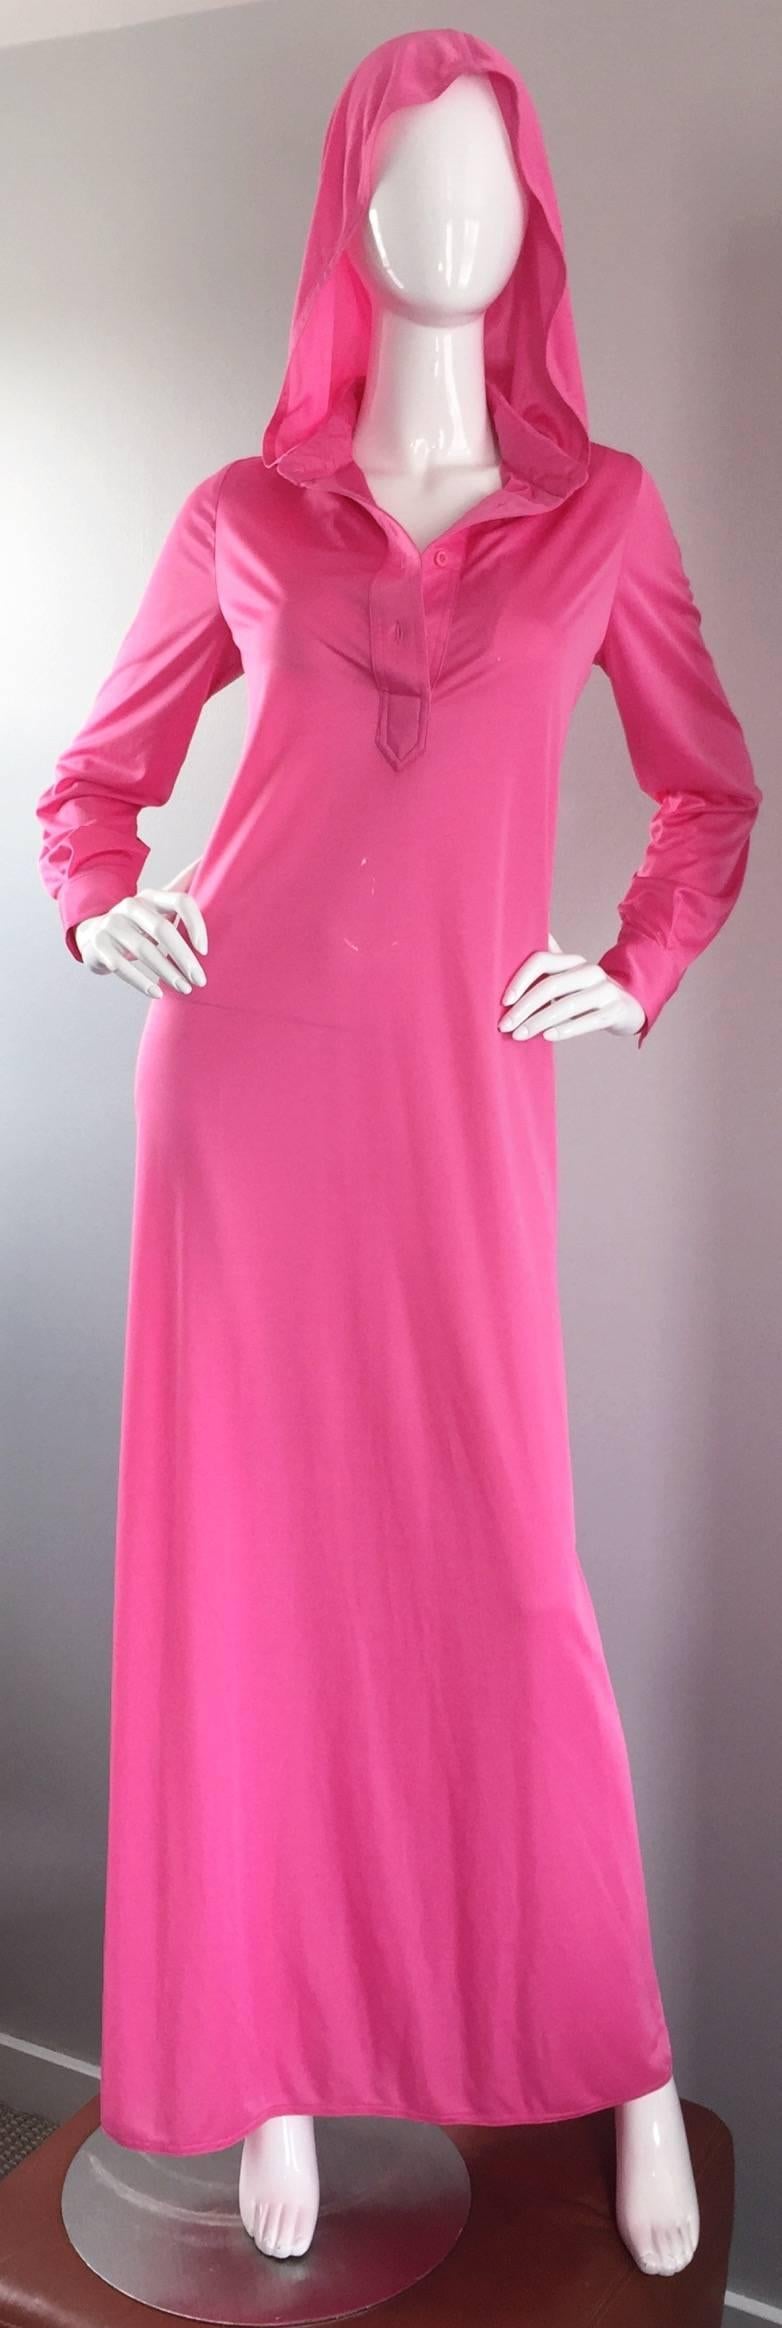 Geoffrey Beene Vintage Pink Hooded Caftan Long Sleeve Maxi Dress 3